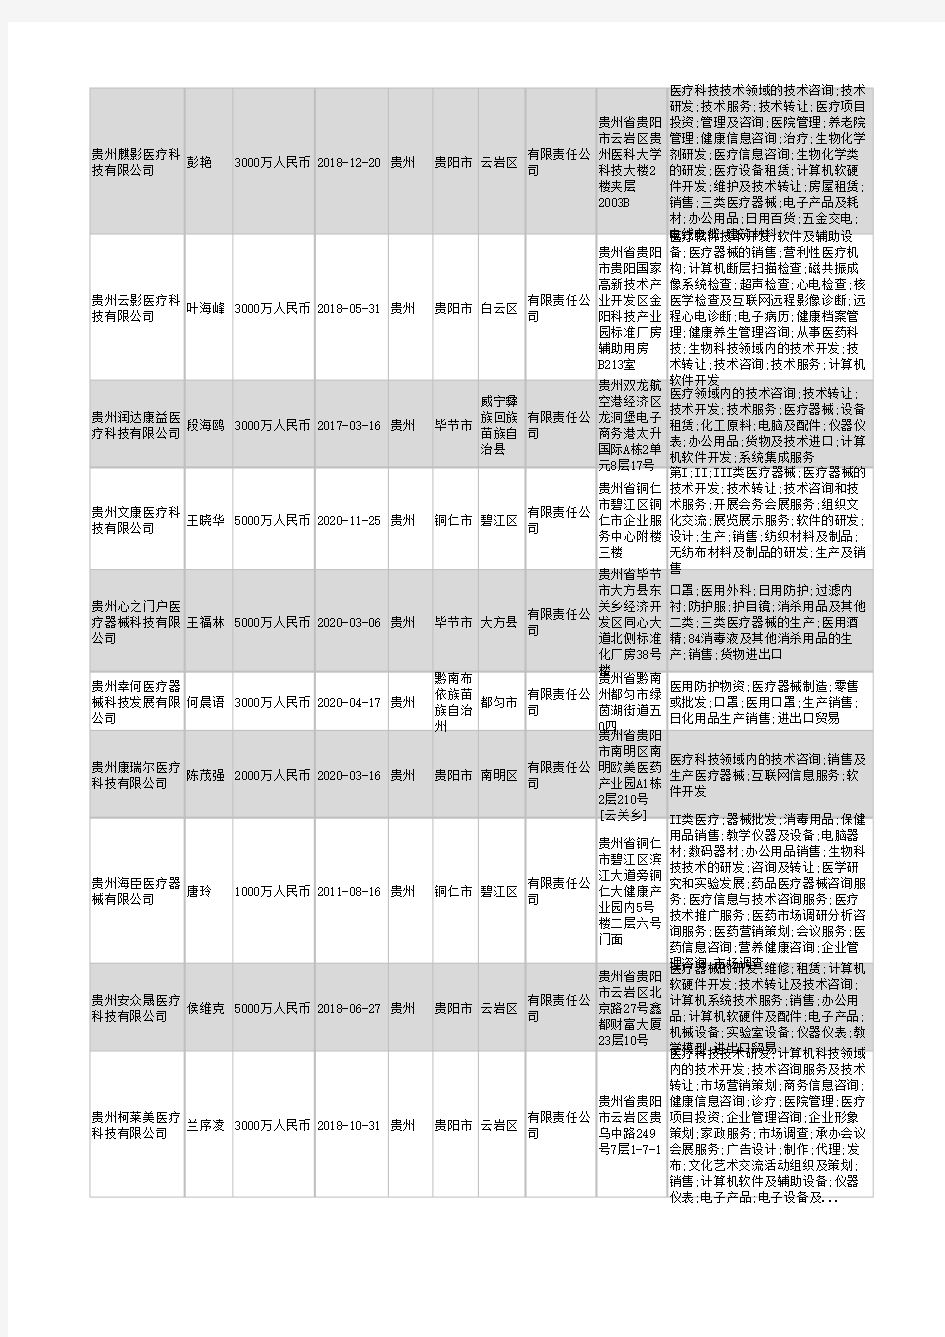 2021年贵州省医疗科技公司企业名录317家